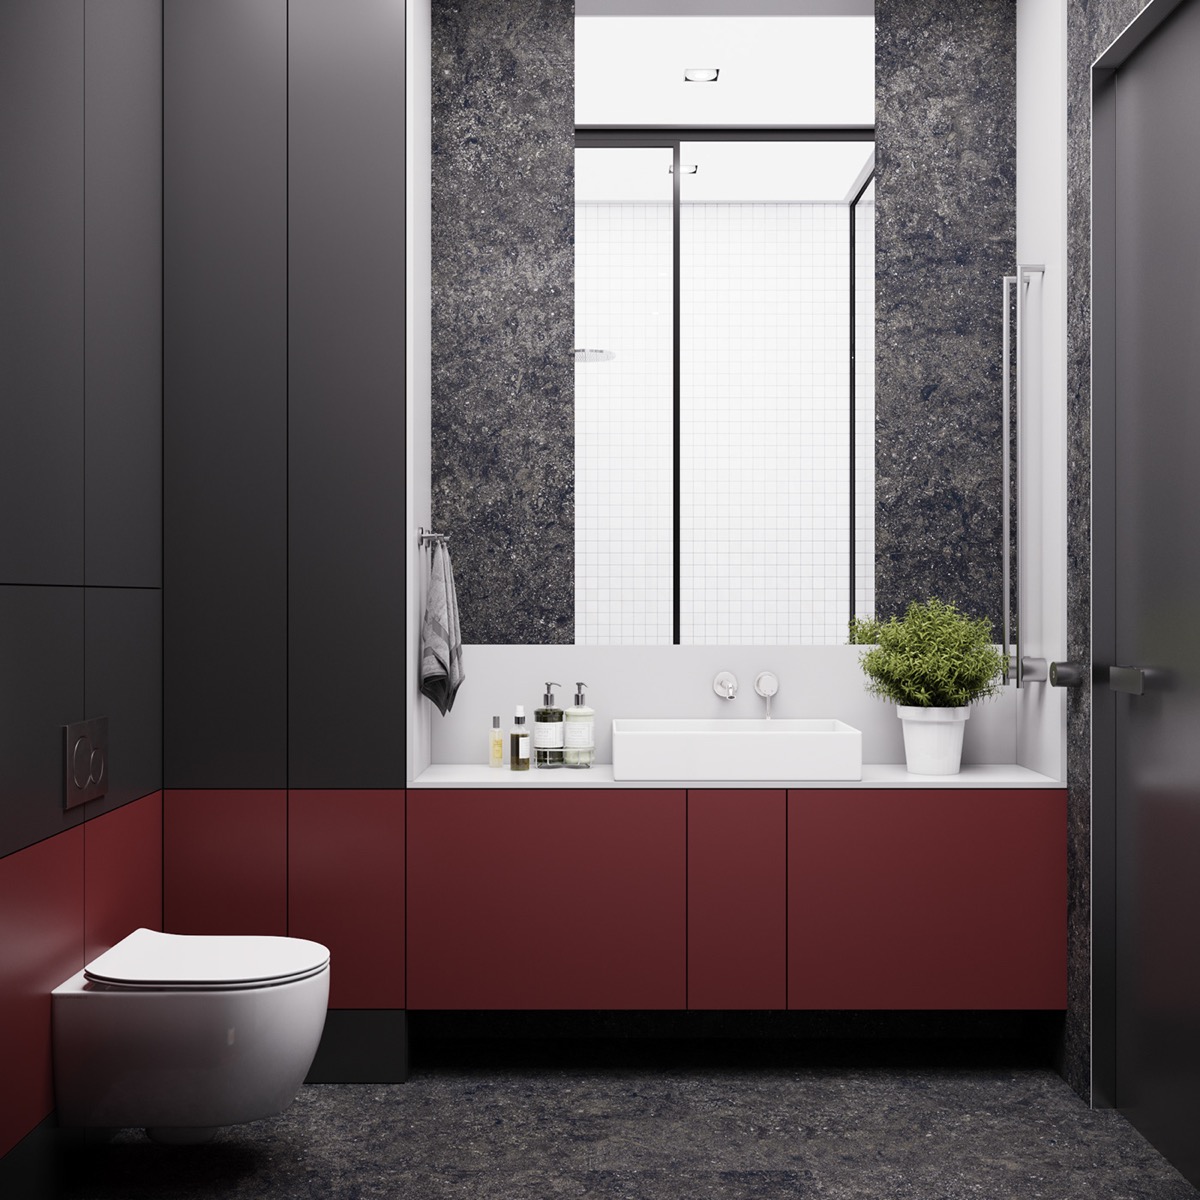 Hình ảnh phòng tắm hiện đại sử dụng màu xám đen, đỏ ấn tượng